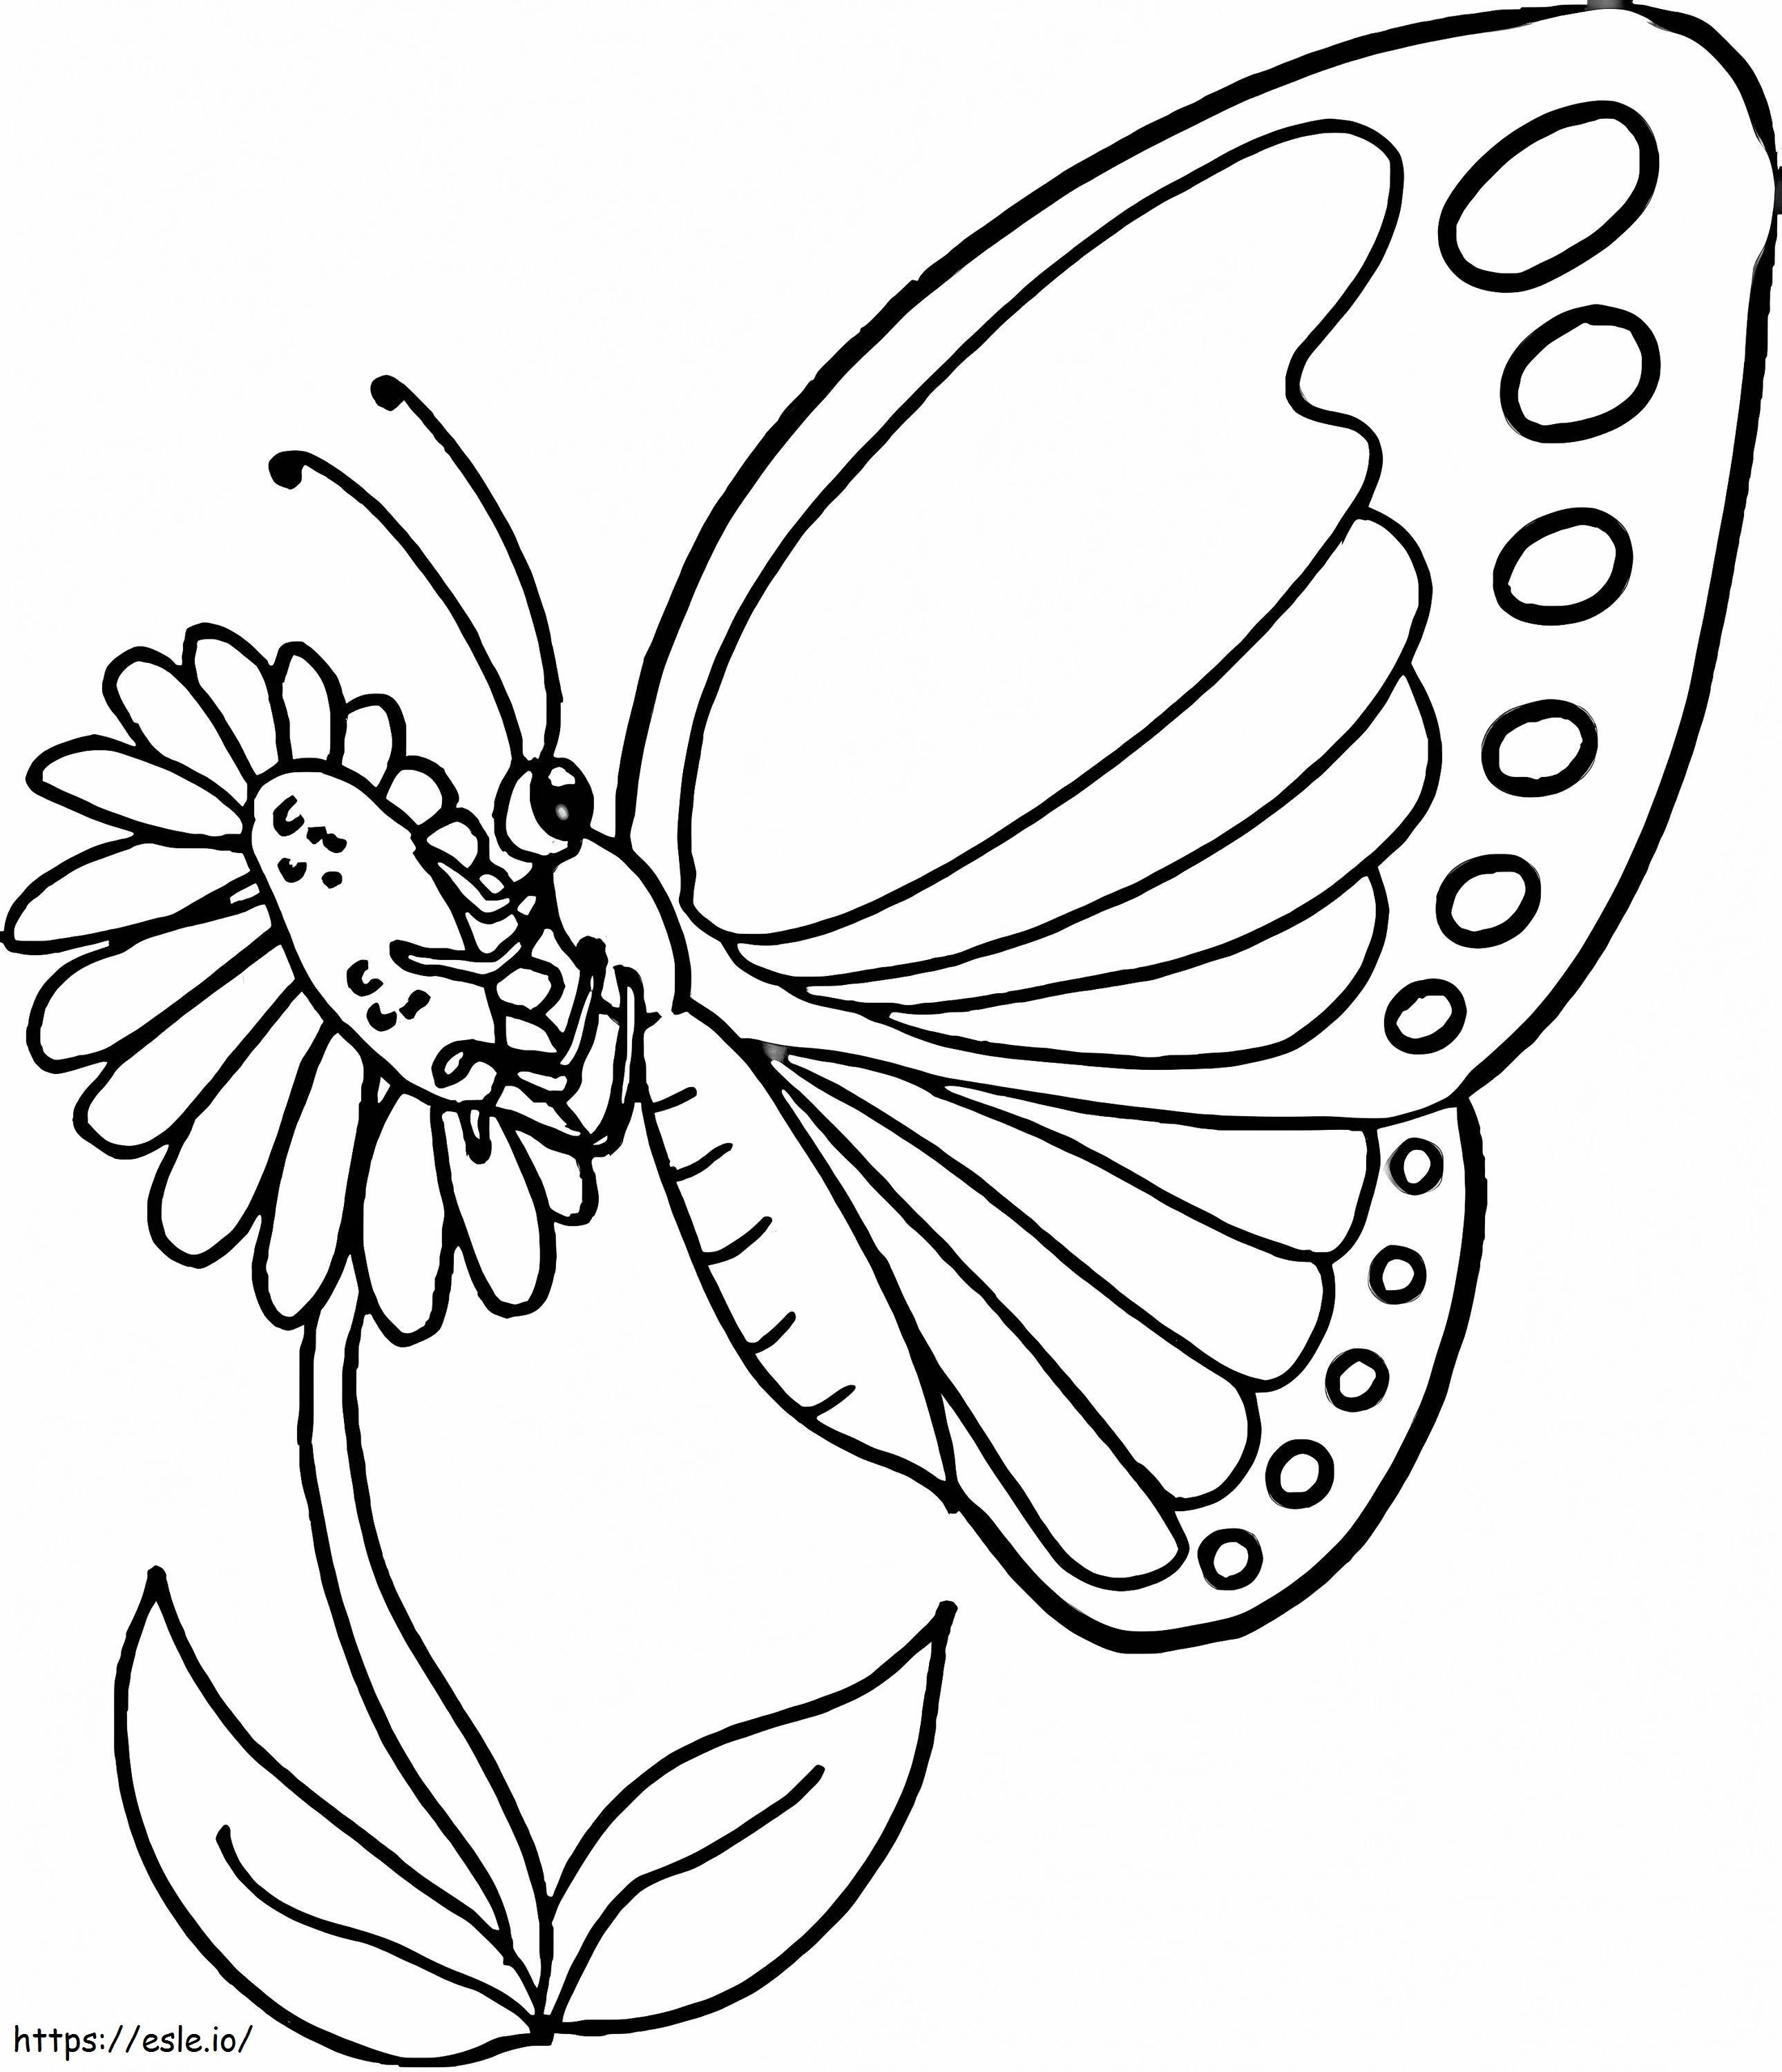 Schmetterling auf Blume ausmalbilder